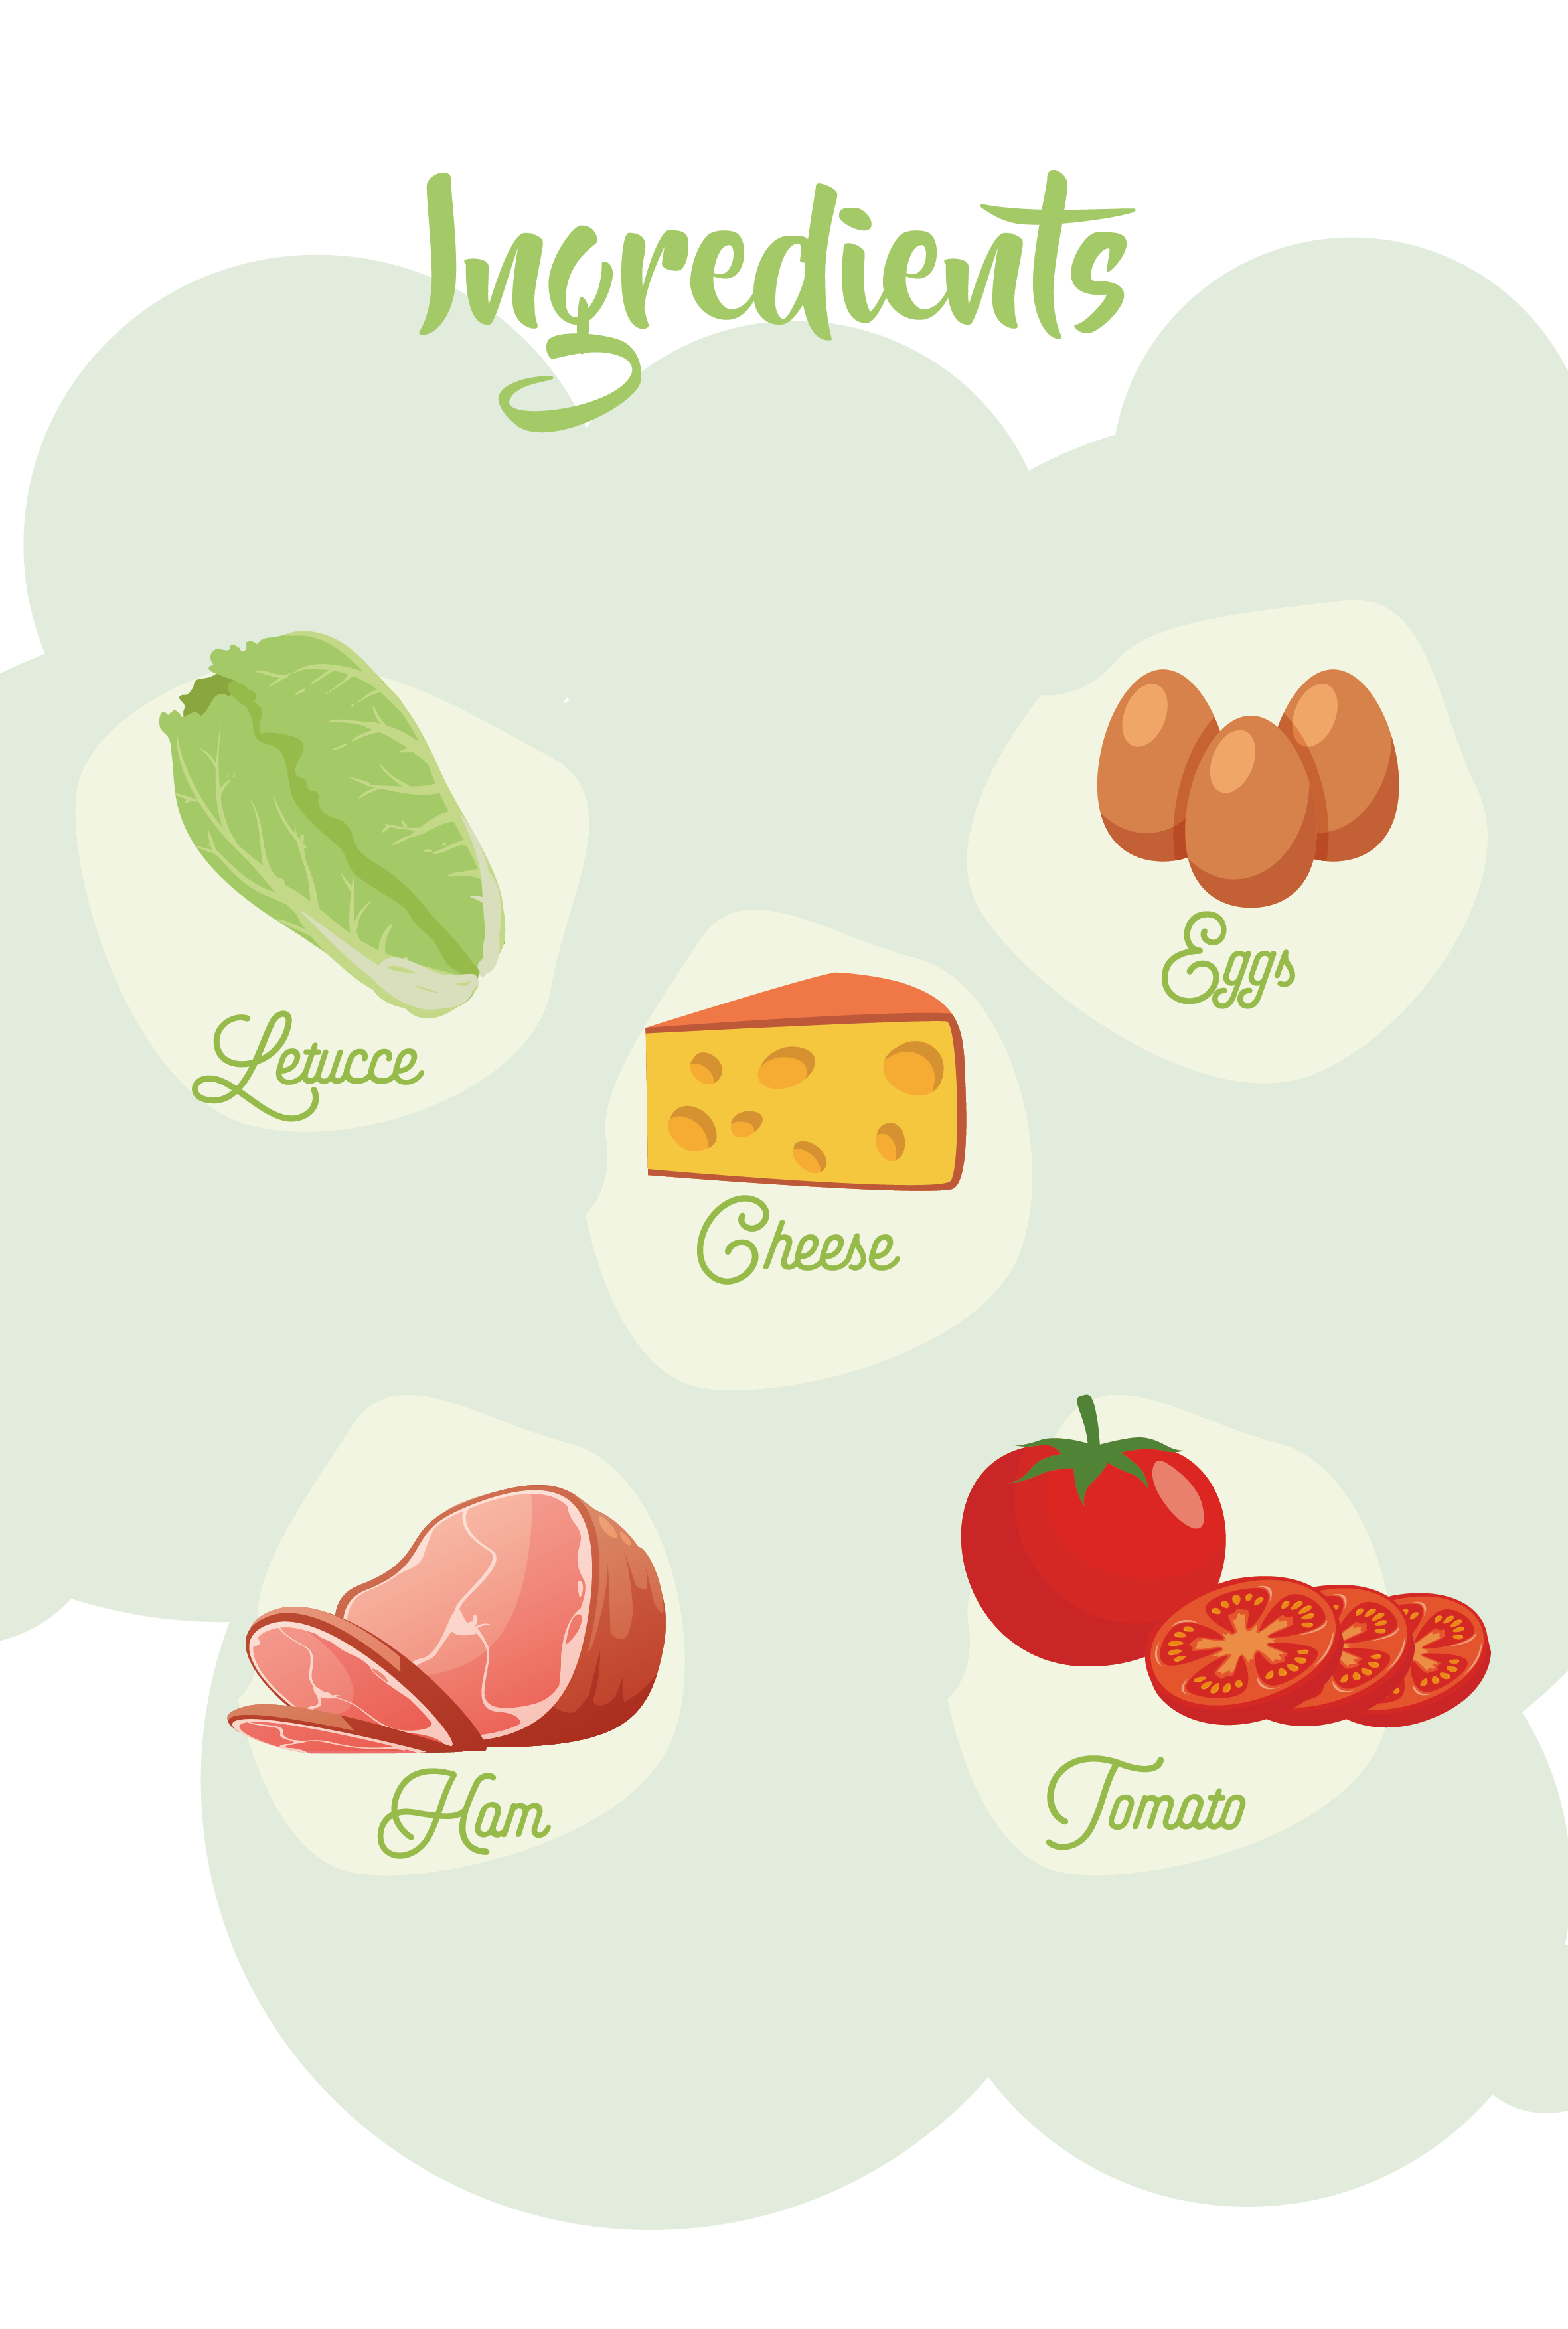 En la imagen aparecen cinco ingredientes con los que se pueden elaborar diversos platos. Estos ingredientes son: lechuga (en inglés, lettuce), queso (en inglés, cheese), huevos (en inglés, eggs), tomates (en inglés, tomato) y jamón (en inglés, ham)